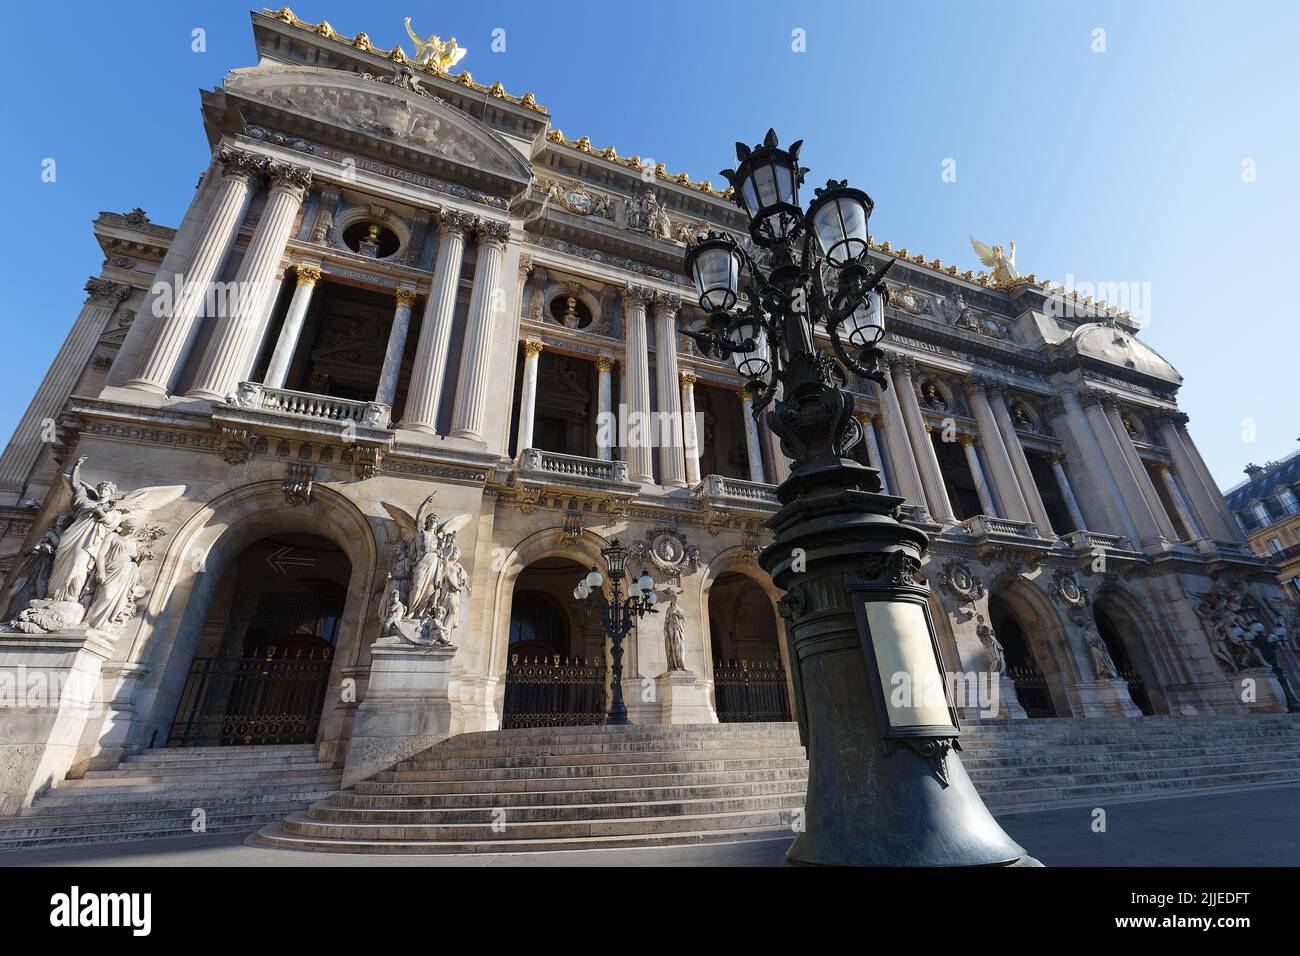 Vista frontal de la Ópera Nacional de París. El Grand Opera es un famoso edificio neobarroco de París. Diseñado por Charles Garnier en 1875. París. Foto de stock